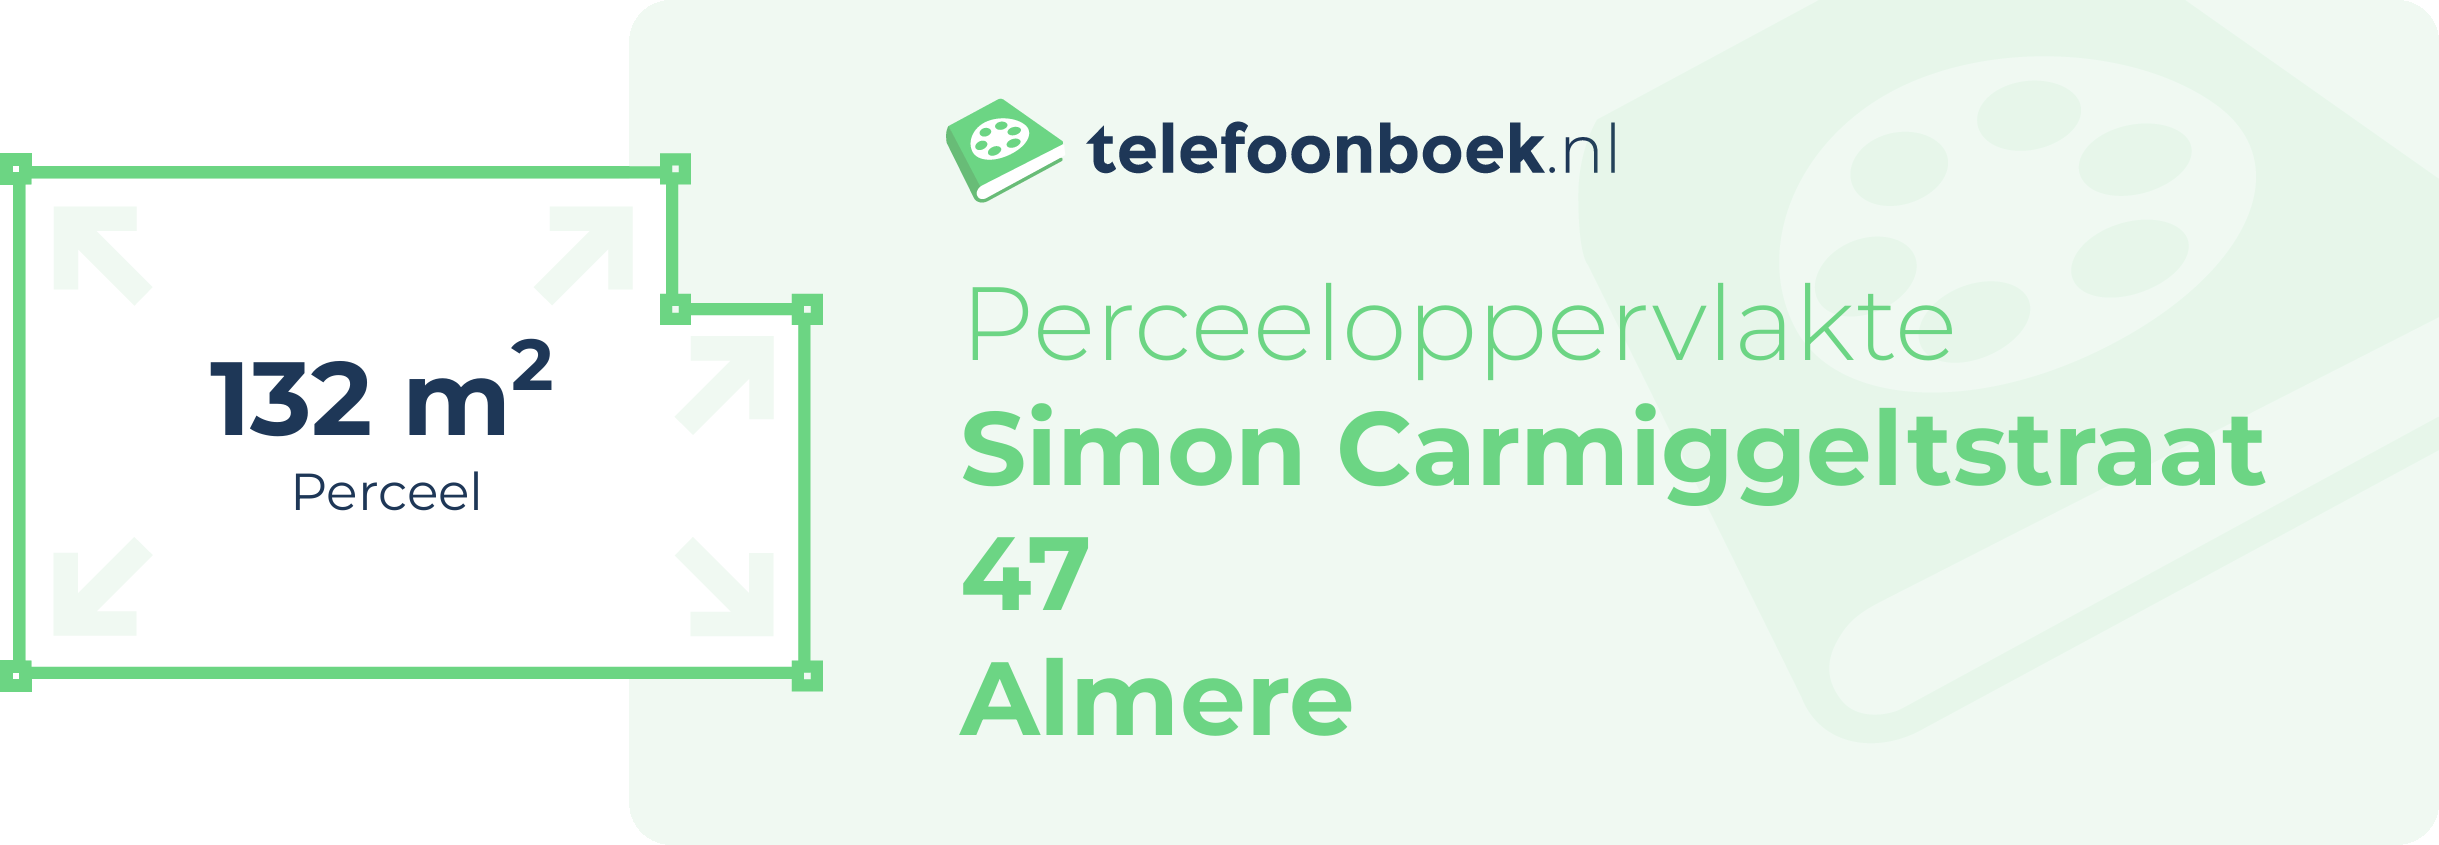 Perceeloppervlakte Simon Carmiggeltstraat 47 Almere